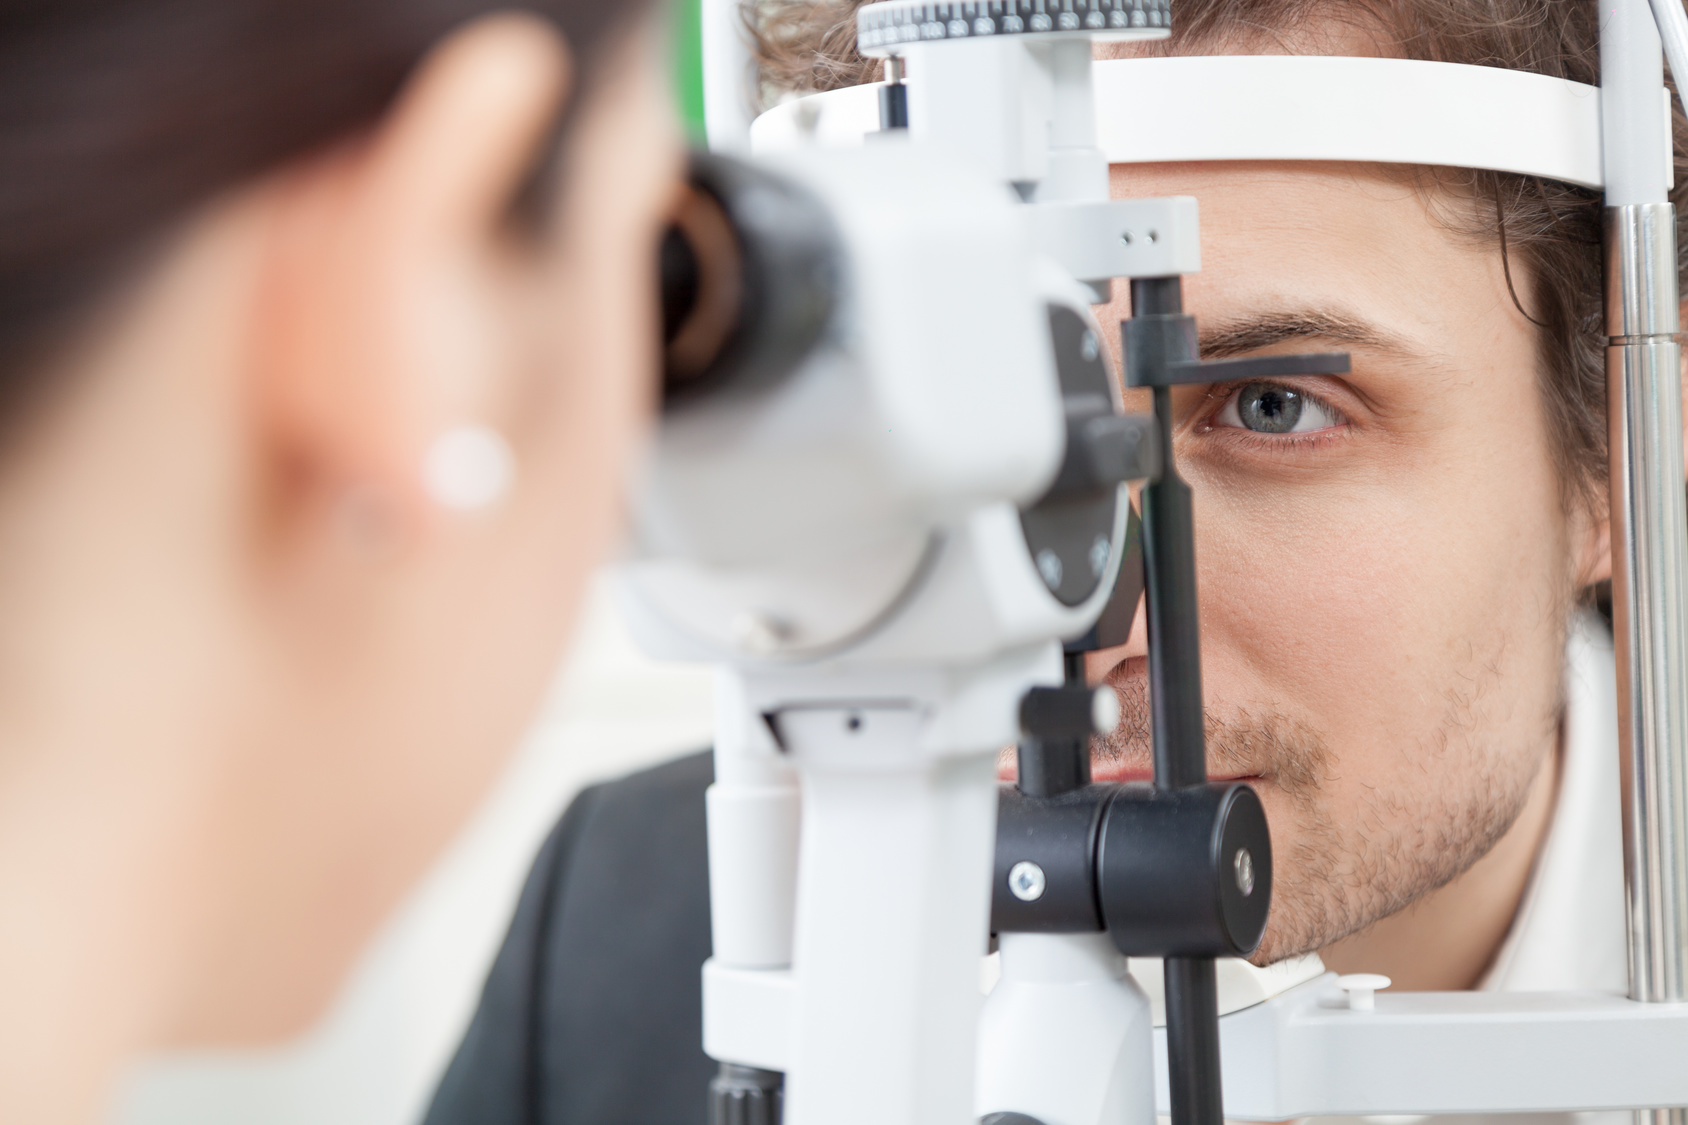 badanie oct oka w czestochowie